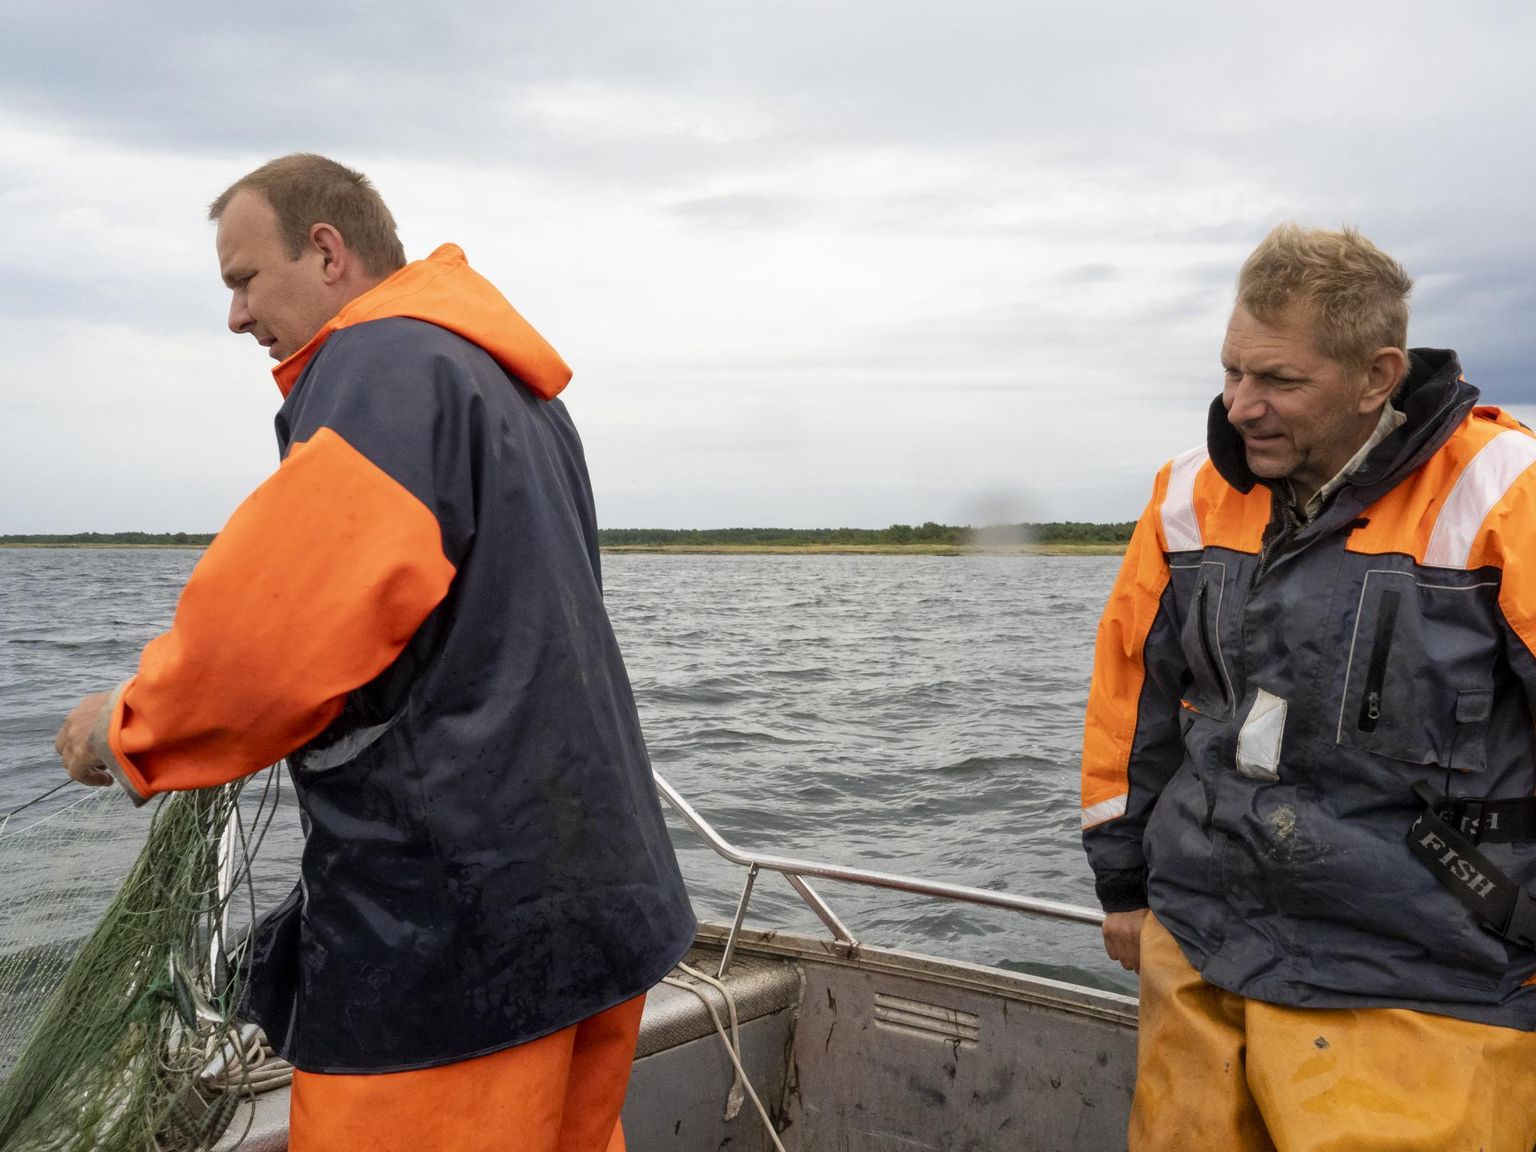 Eesti mereinstituudi rannikumere kalanduse töörühm teeb igal aastal seirepüüke Kihnus, Matsalus, Vilsandil ja Hiiumaa laidudel. Markus Vetemaa (paremal) seirepüügil Vilsandi rannavetes.